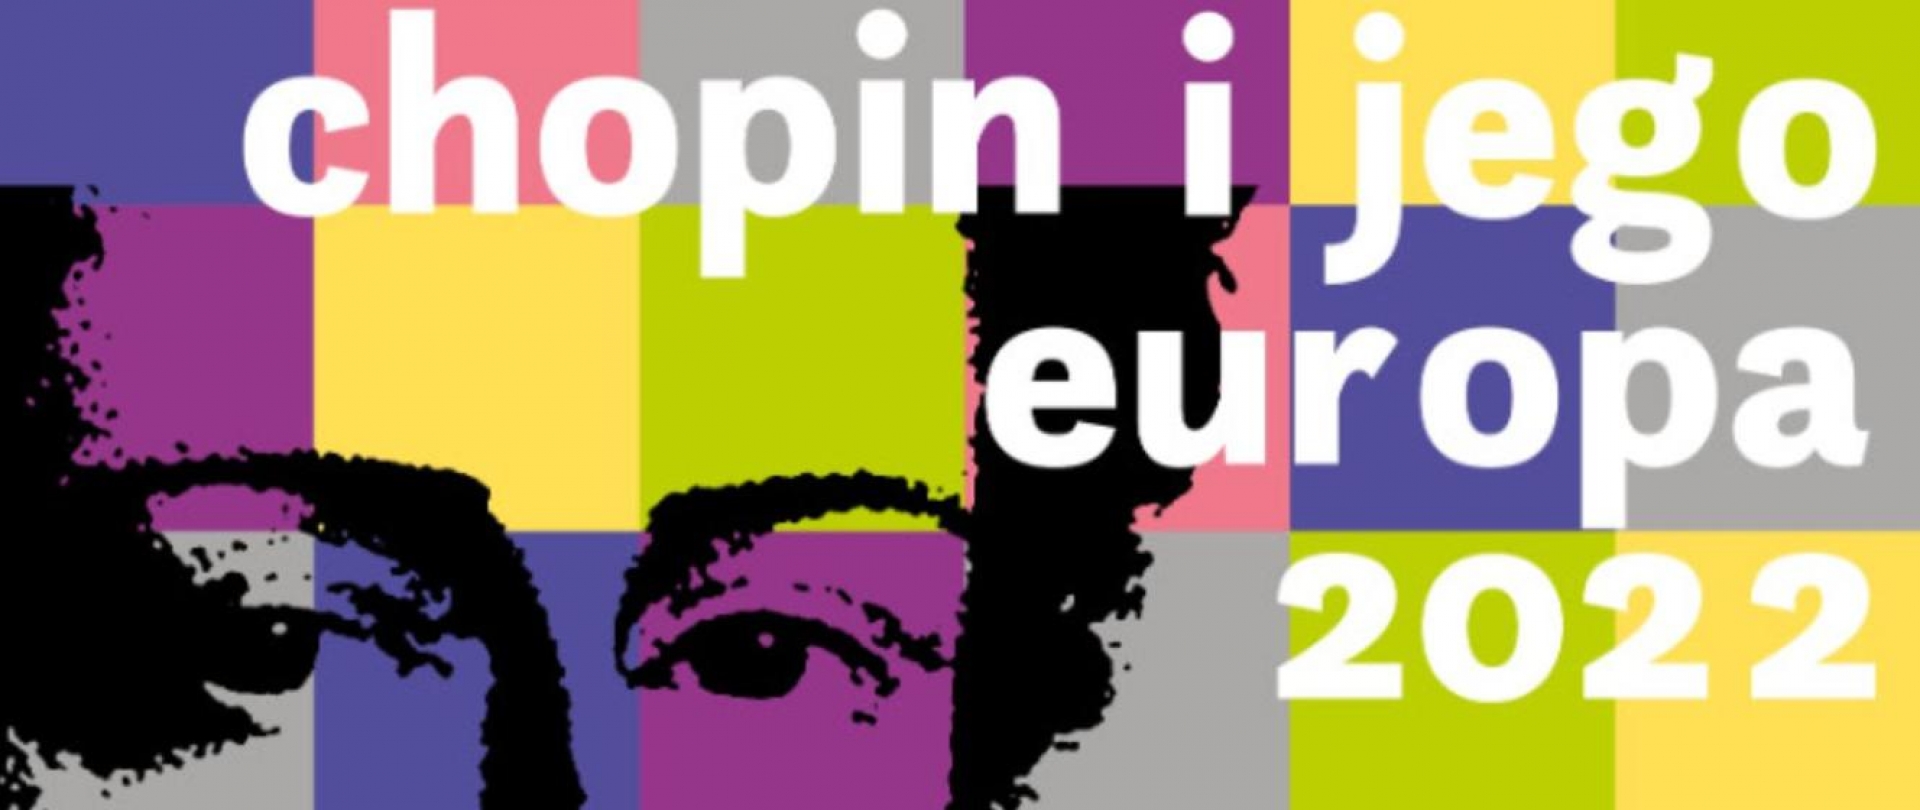 15.08.2022 – XVIII Międzynarodowy Festiwal Muzyczny „Chopin i jego Europa”, Warszawa